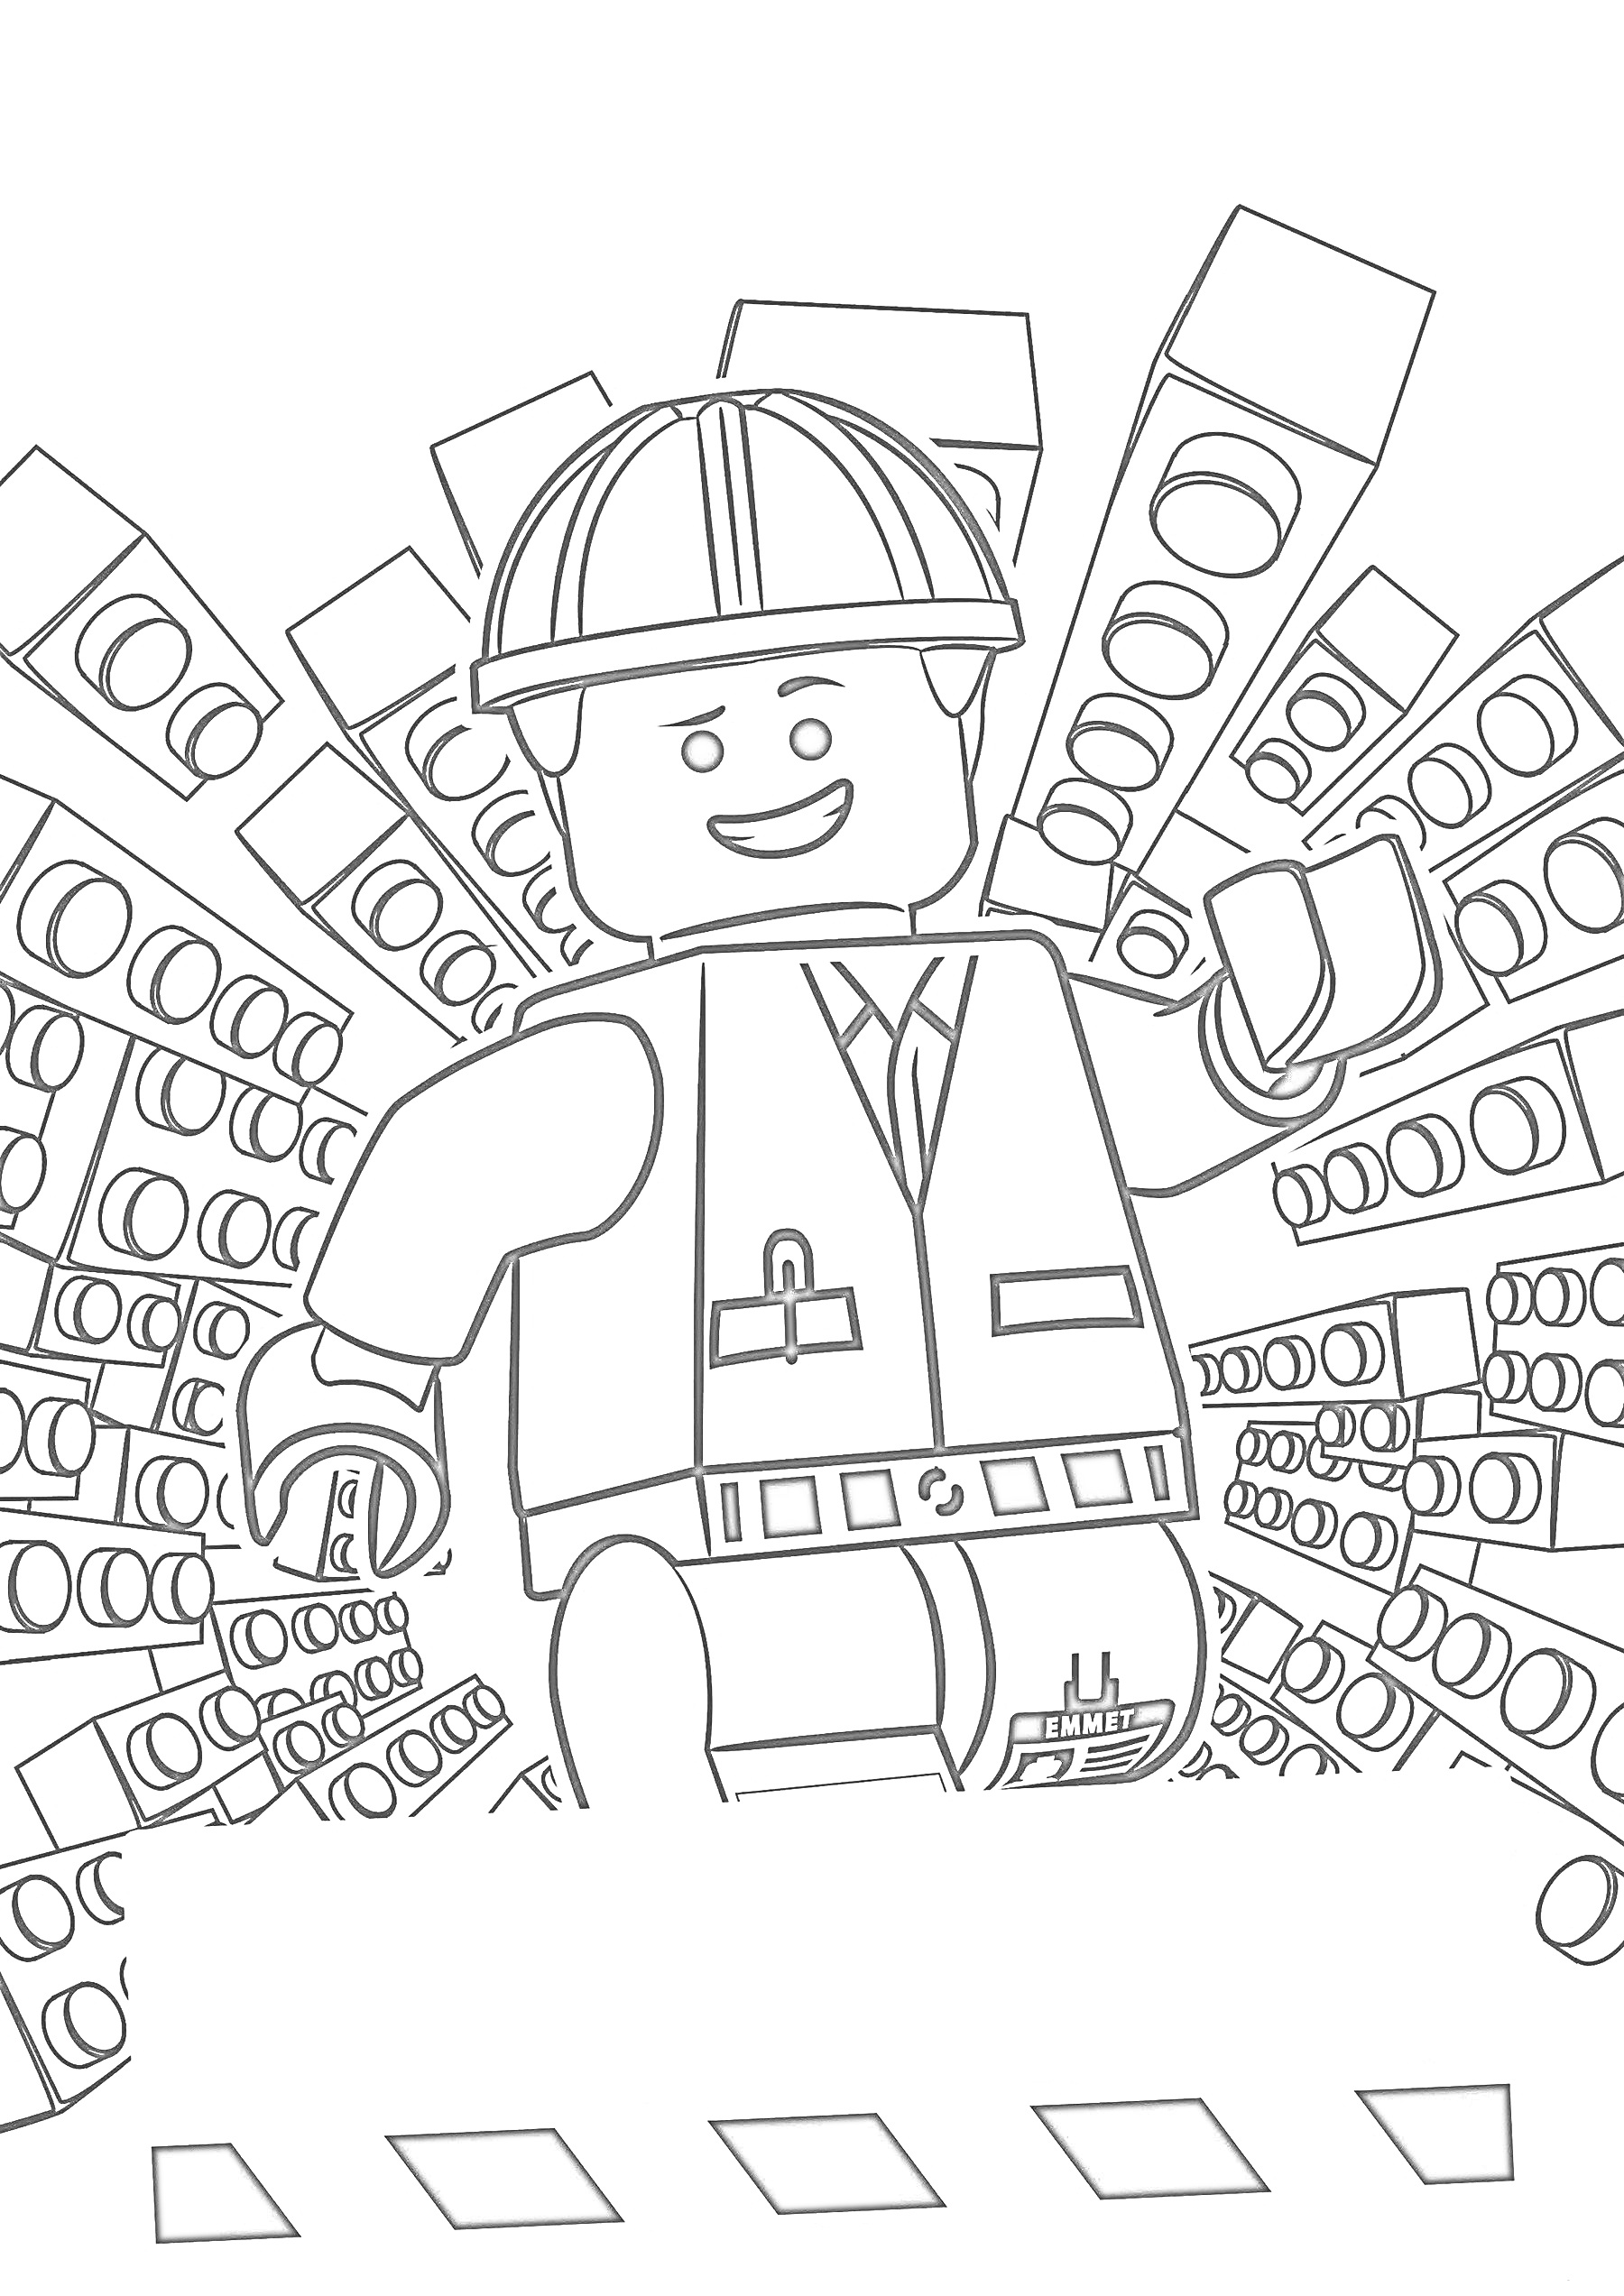 Лего человек в строительной форме, каска, фоновый узор из блоков Лего, приветственный жест рукой